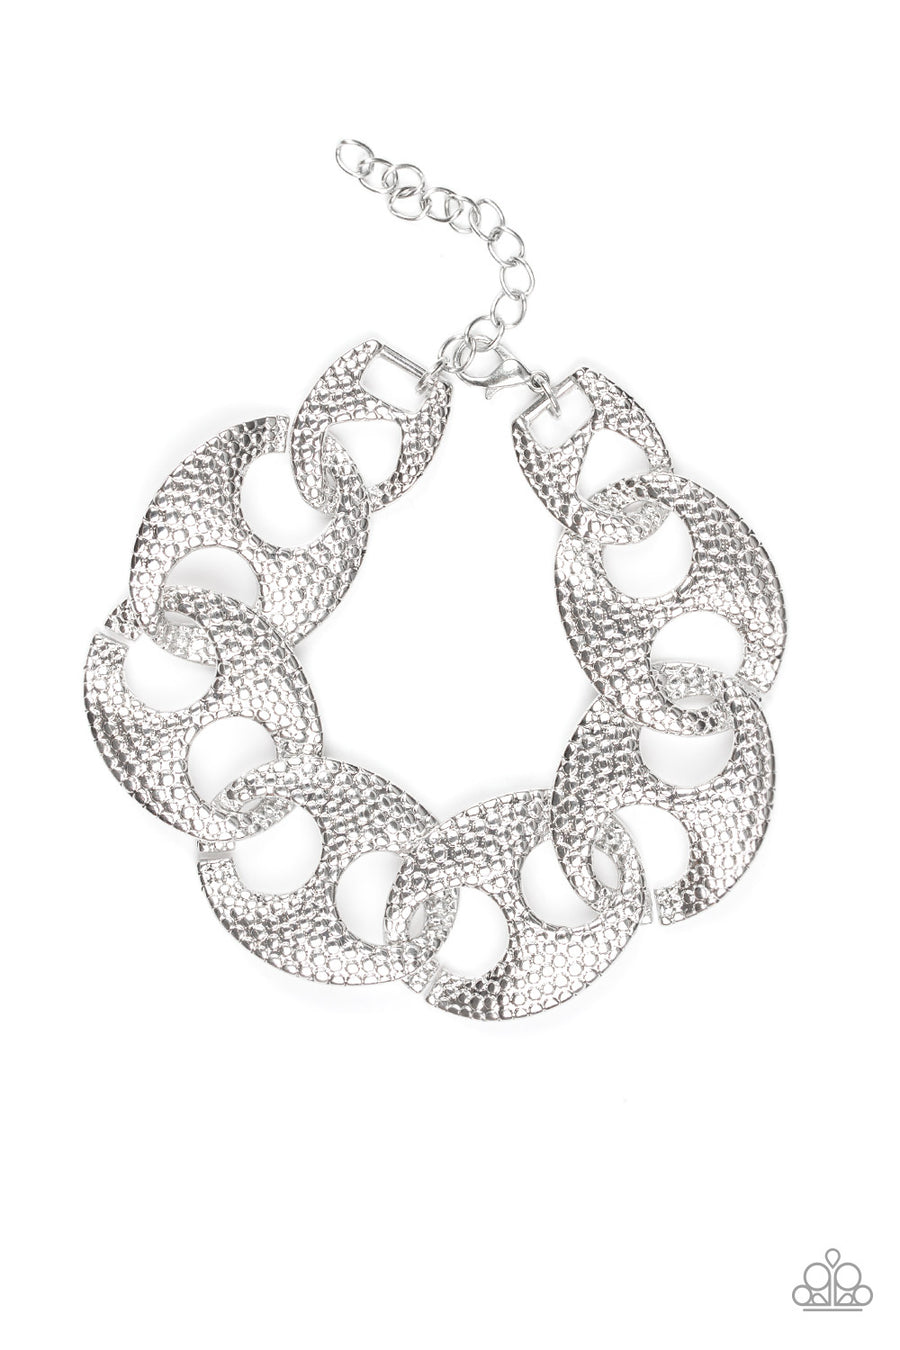 Casual Connoisseur  - Silver Textured Link Bracelet  - Paparazzi Accessories